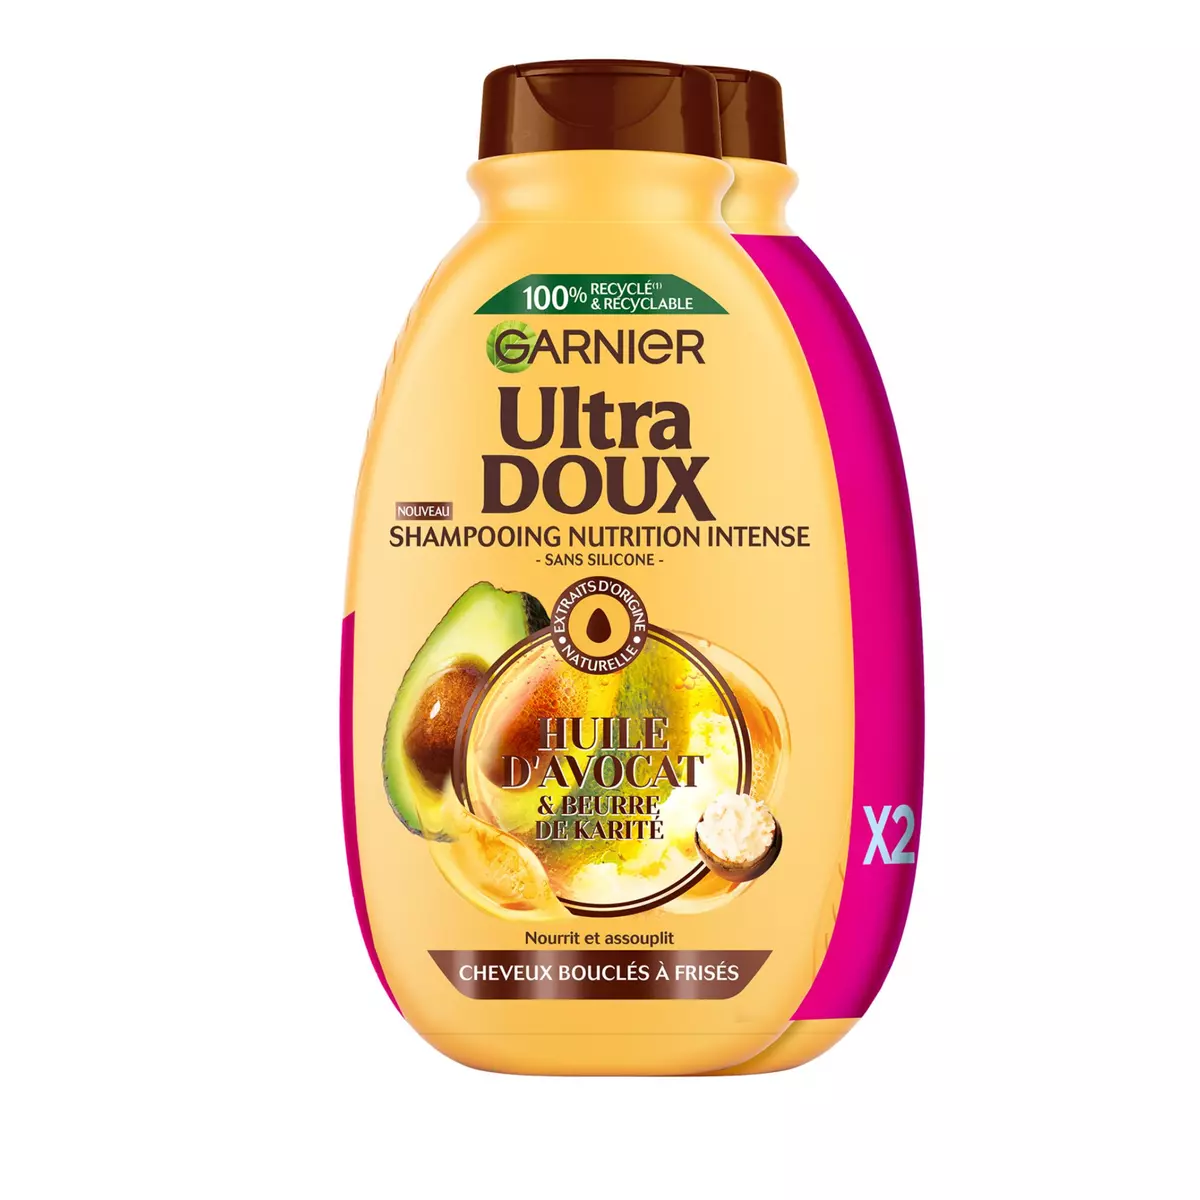 ULTRA DOUX Shampooing nutrition intense avocat karité cheveux bouclés à frisés 2x300ml